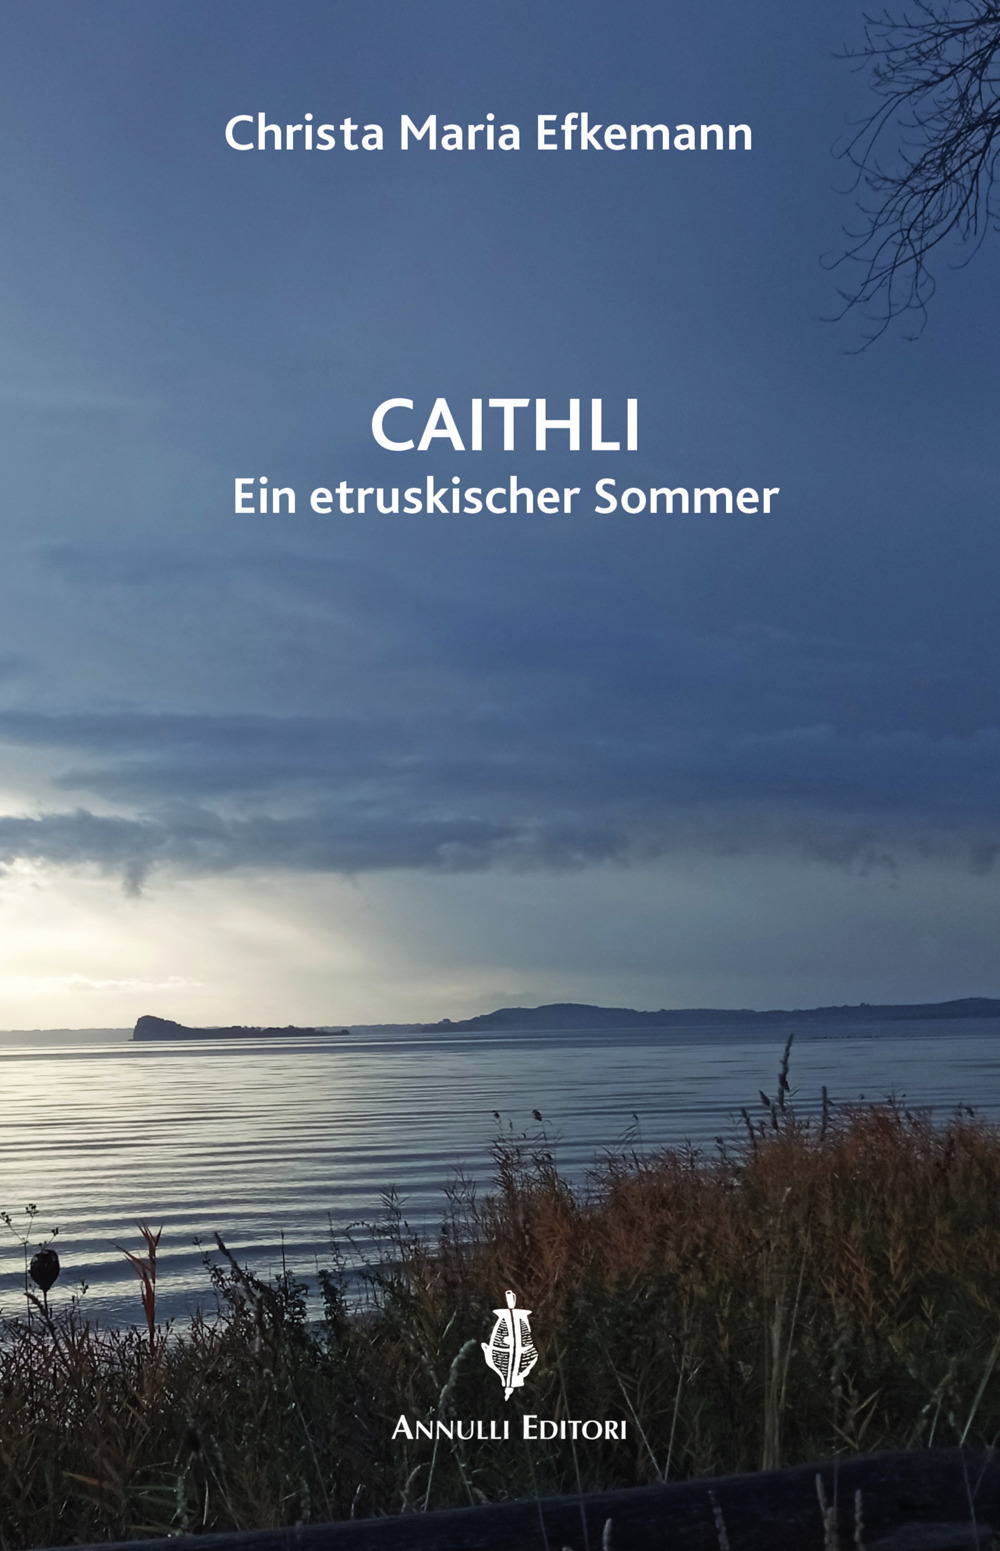 Caithli. Eine etruskischer Sommer